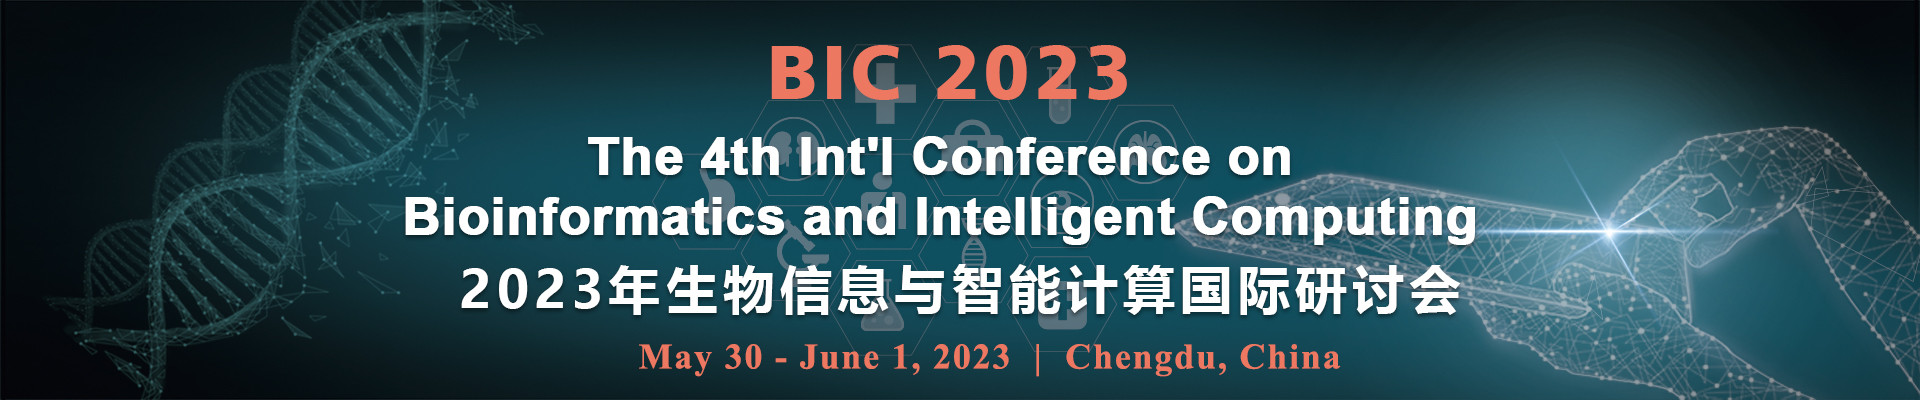 第四届生物信息与智能计算国际研讨会(BIC 2023)